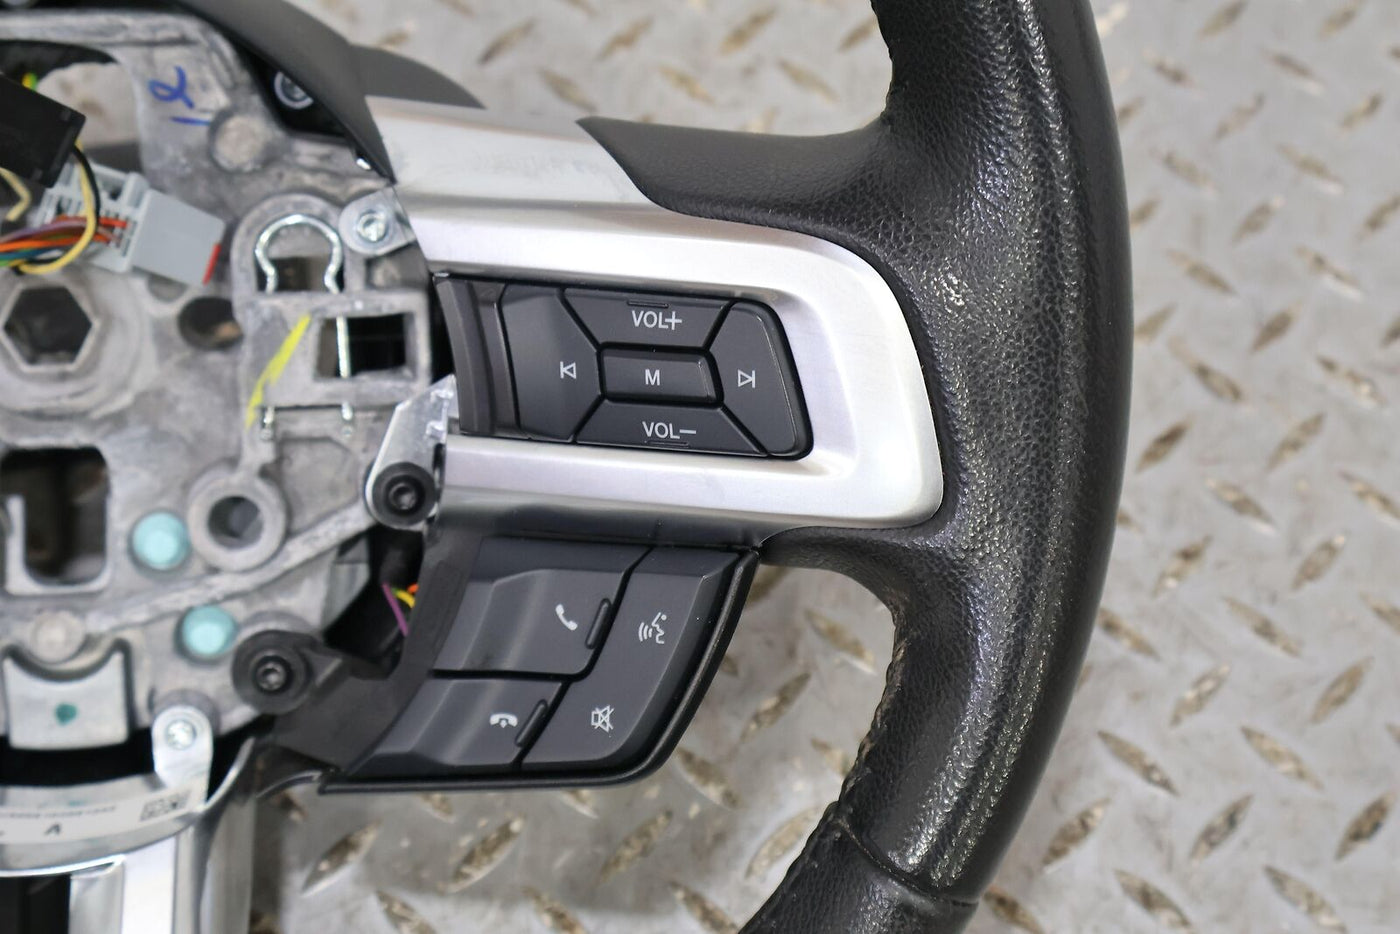 15-17 Ford Mustang GT Leather Steering Wheel (Ebony 21) Manual Trans Mild Wear